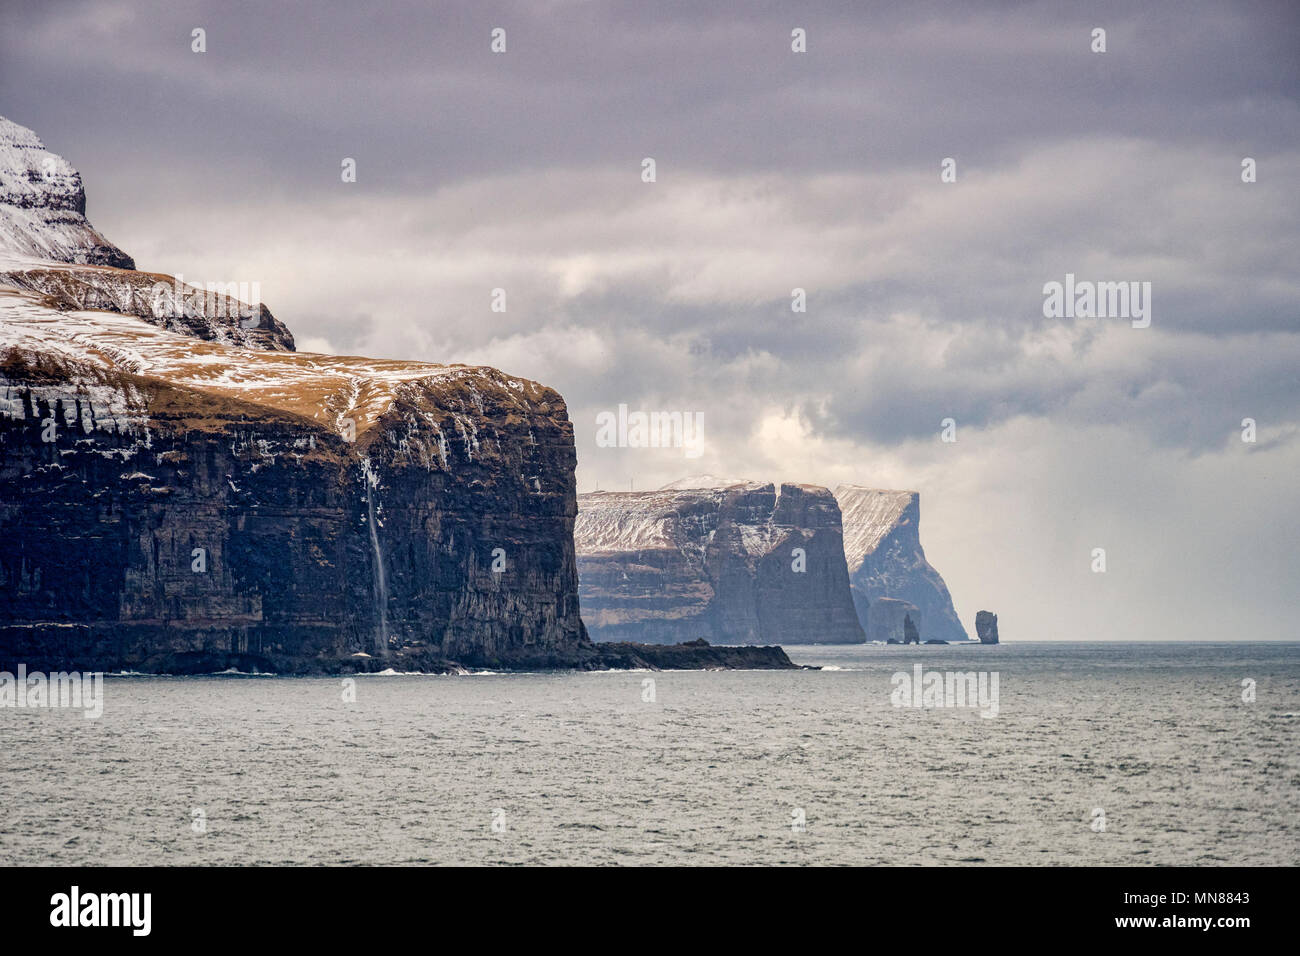 Les falaises, les promontoires et les piles de la mer Risin et Kellingin sur la côte nord de l'Eysturoy, la deuxième plus grande des îles Féroé dans l'Atlantique Nord. Banque D'Images